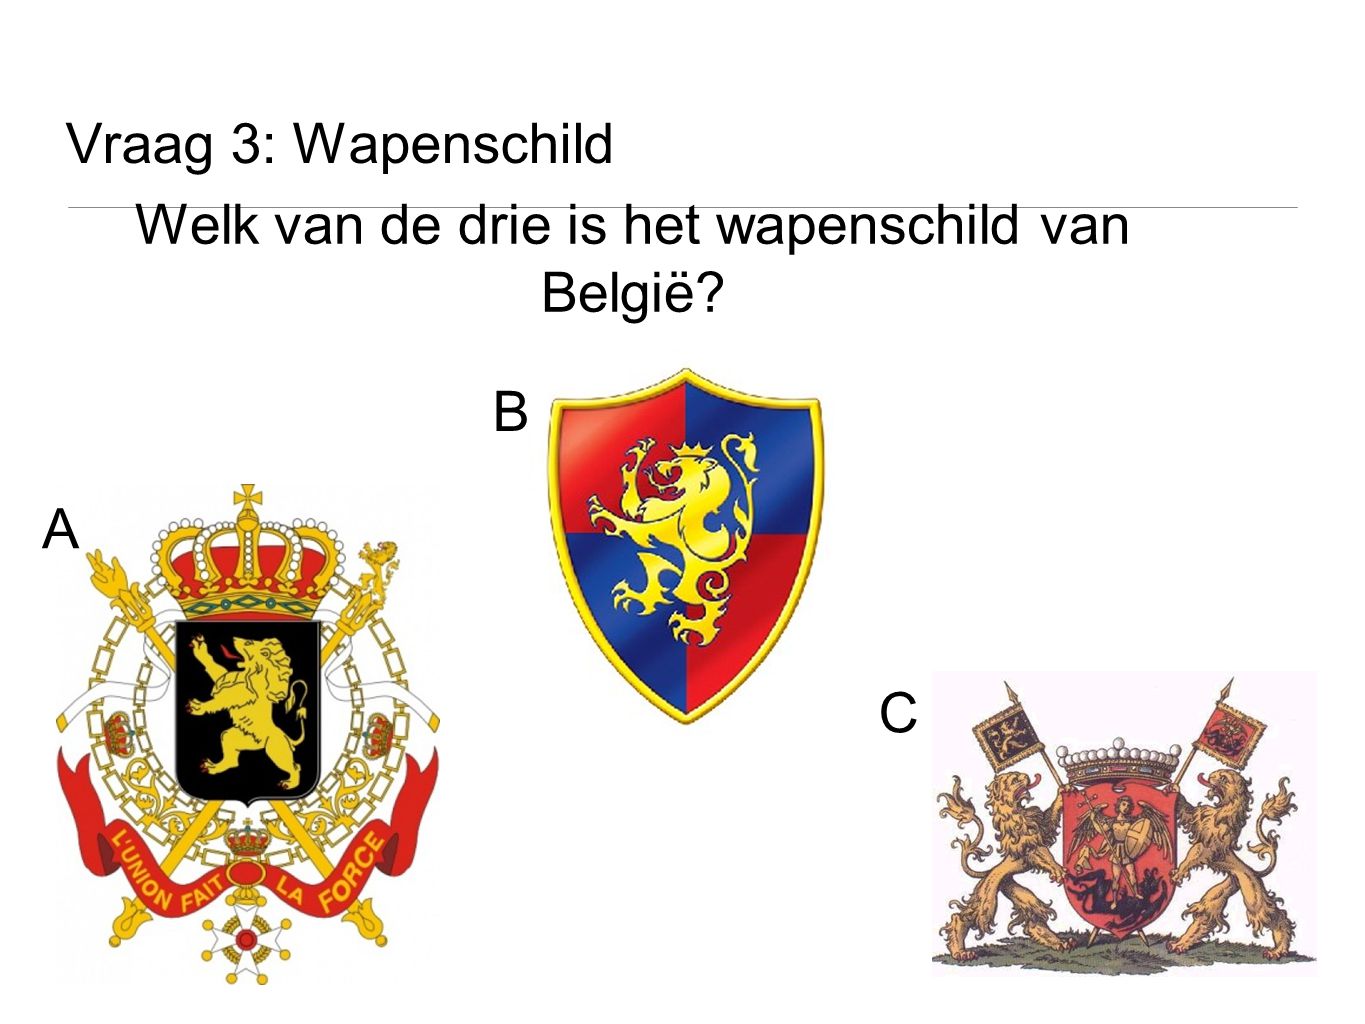 Welk van de drie is het wapenschild van België